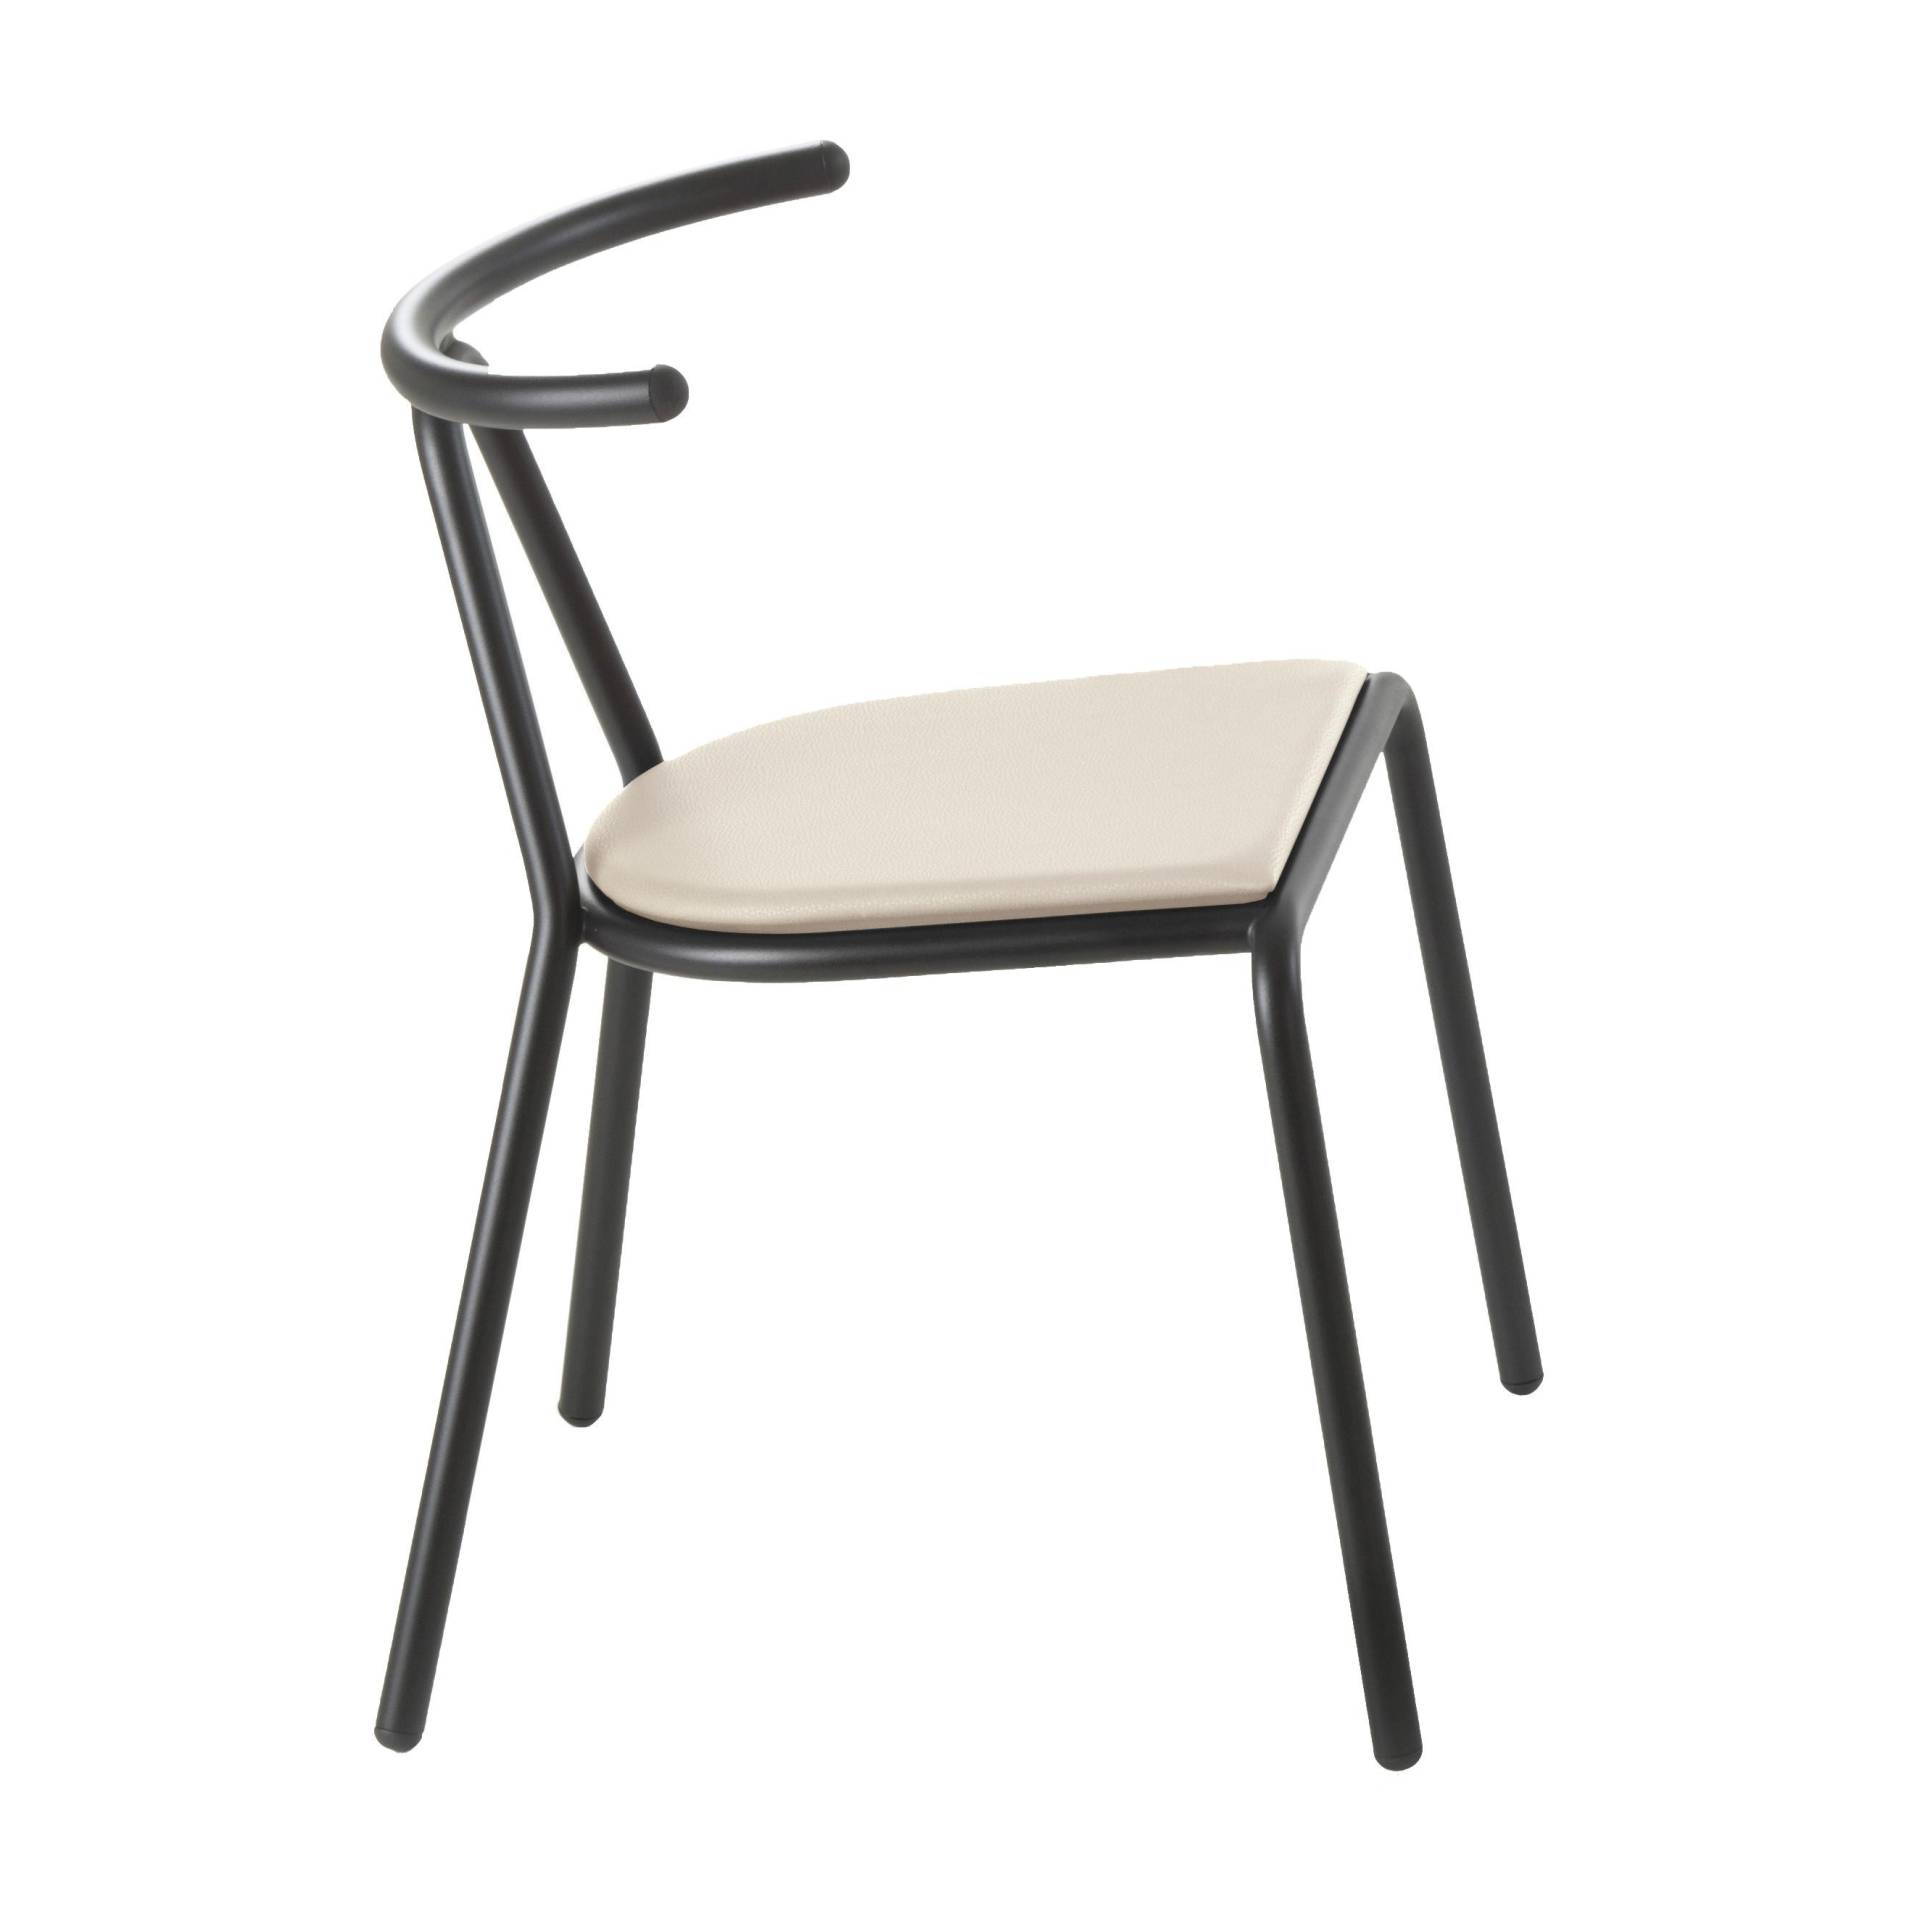 B-Line - Toro Stuhl Sitzfläche Platinum Flukso - beige/Sitzfläche: Platinum Flukso/Gestell schwarz/BxHxT 55x73,5x54cm von B-Line